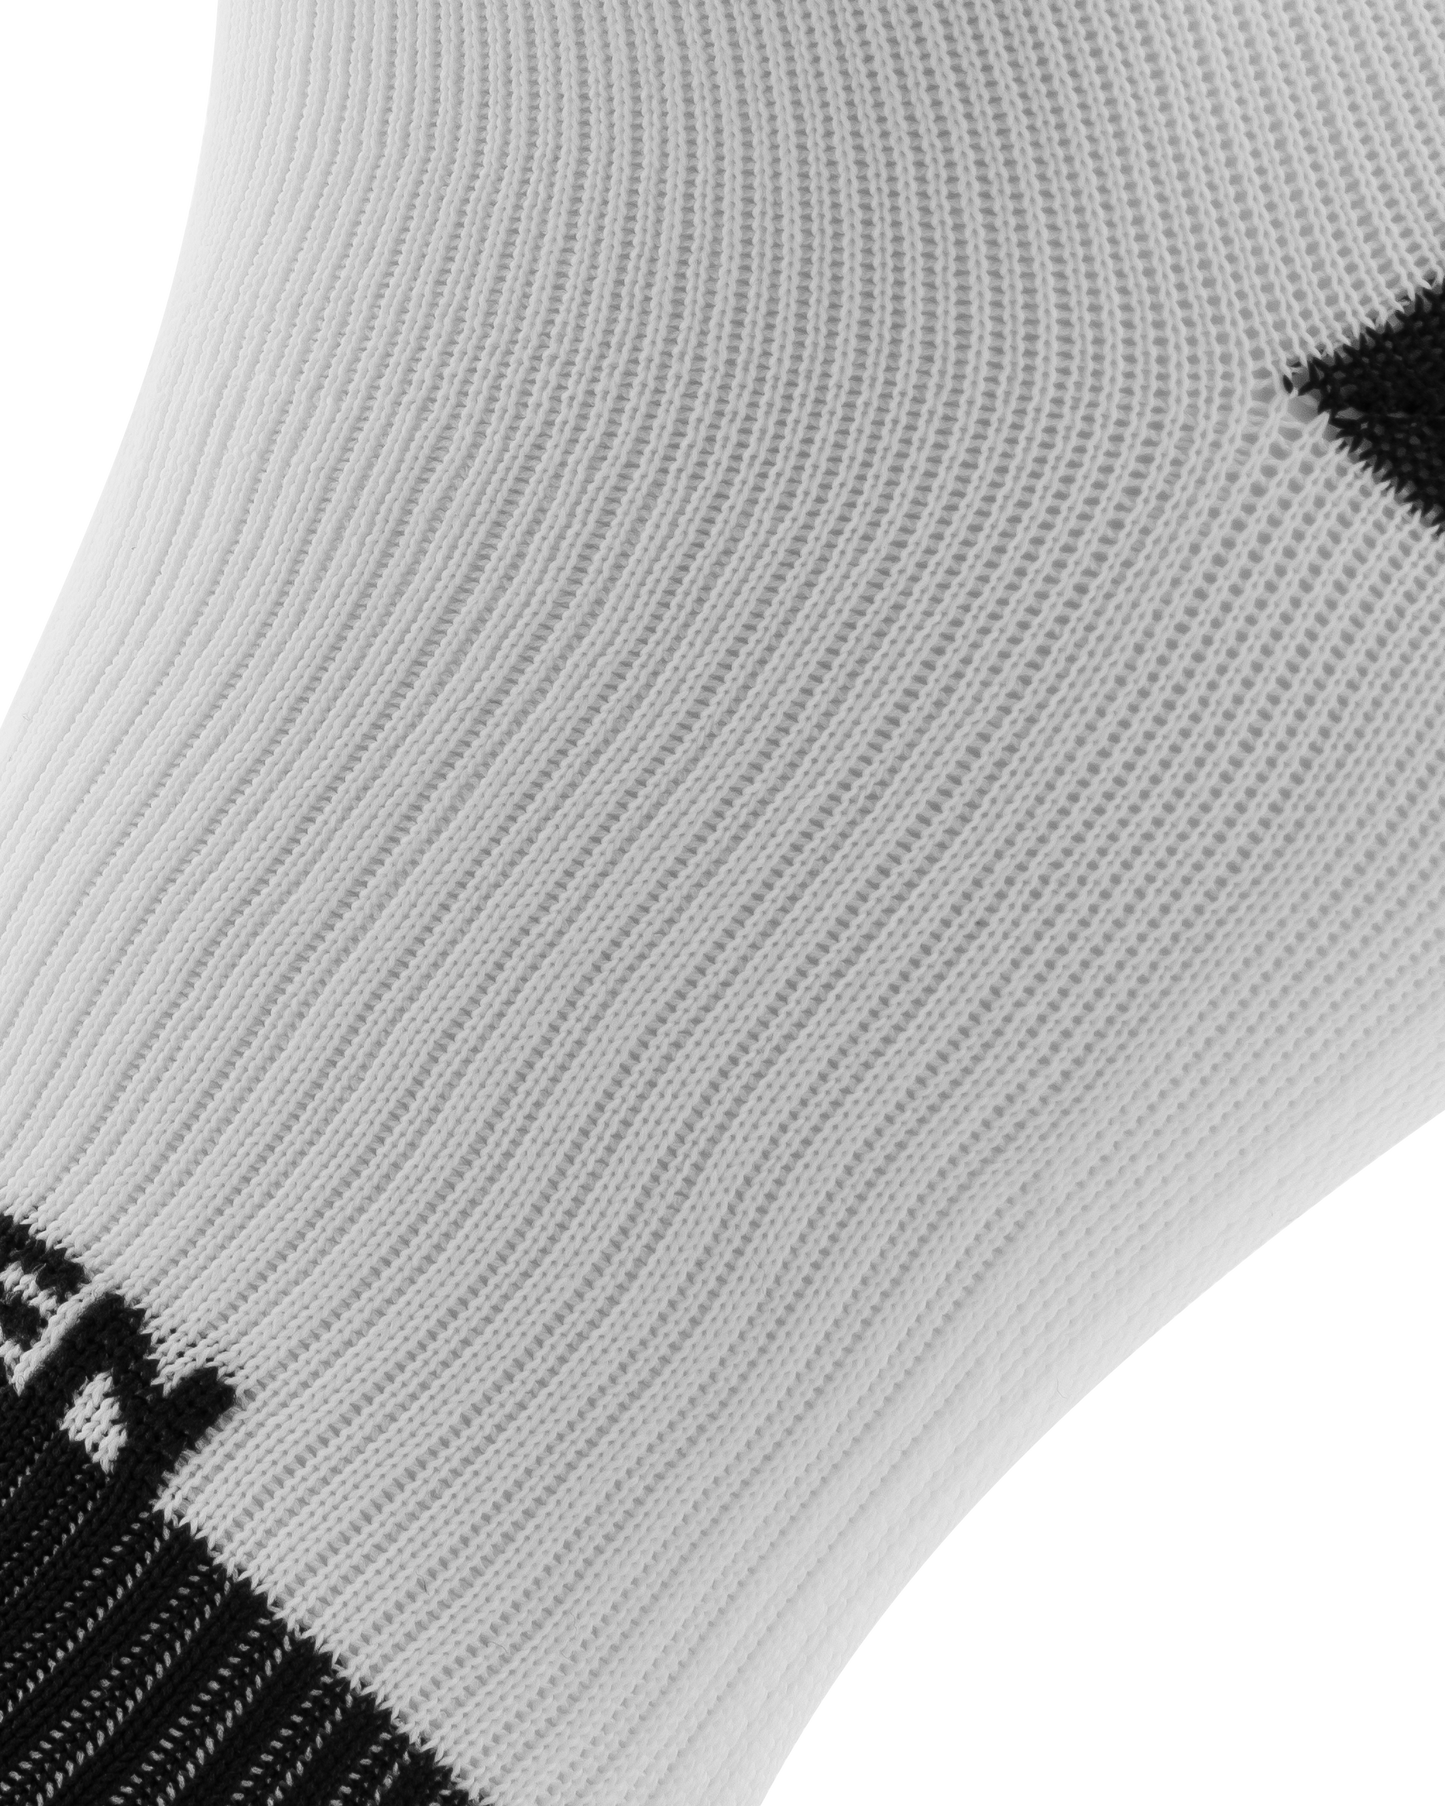 white-rest-mode-compression-socks-sockeloen